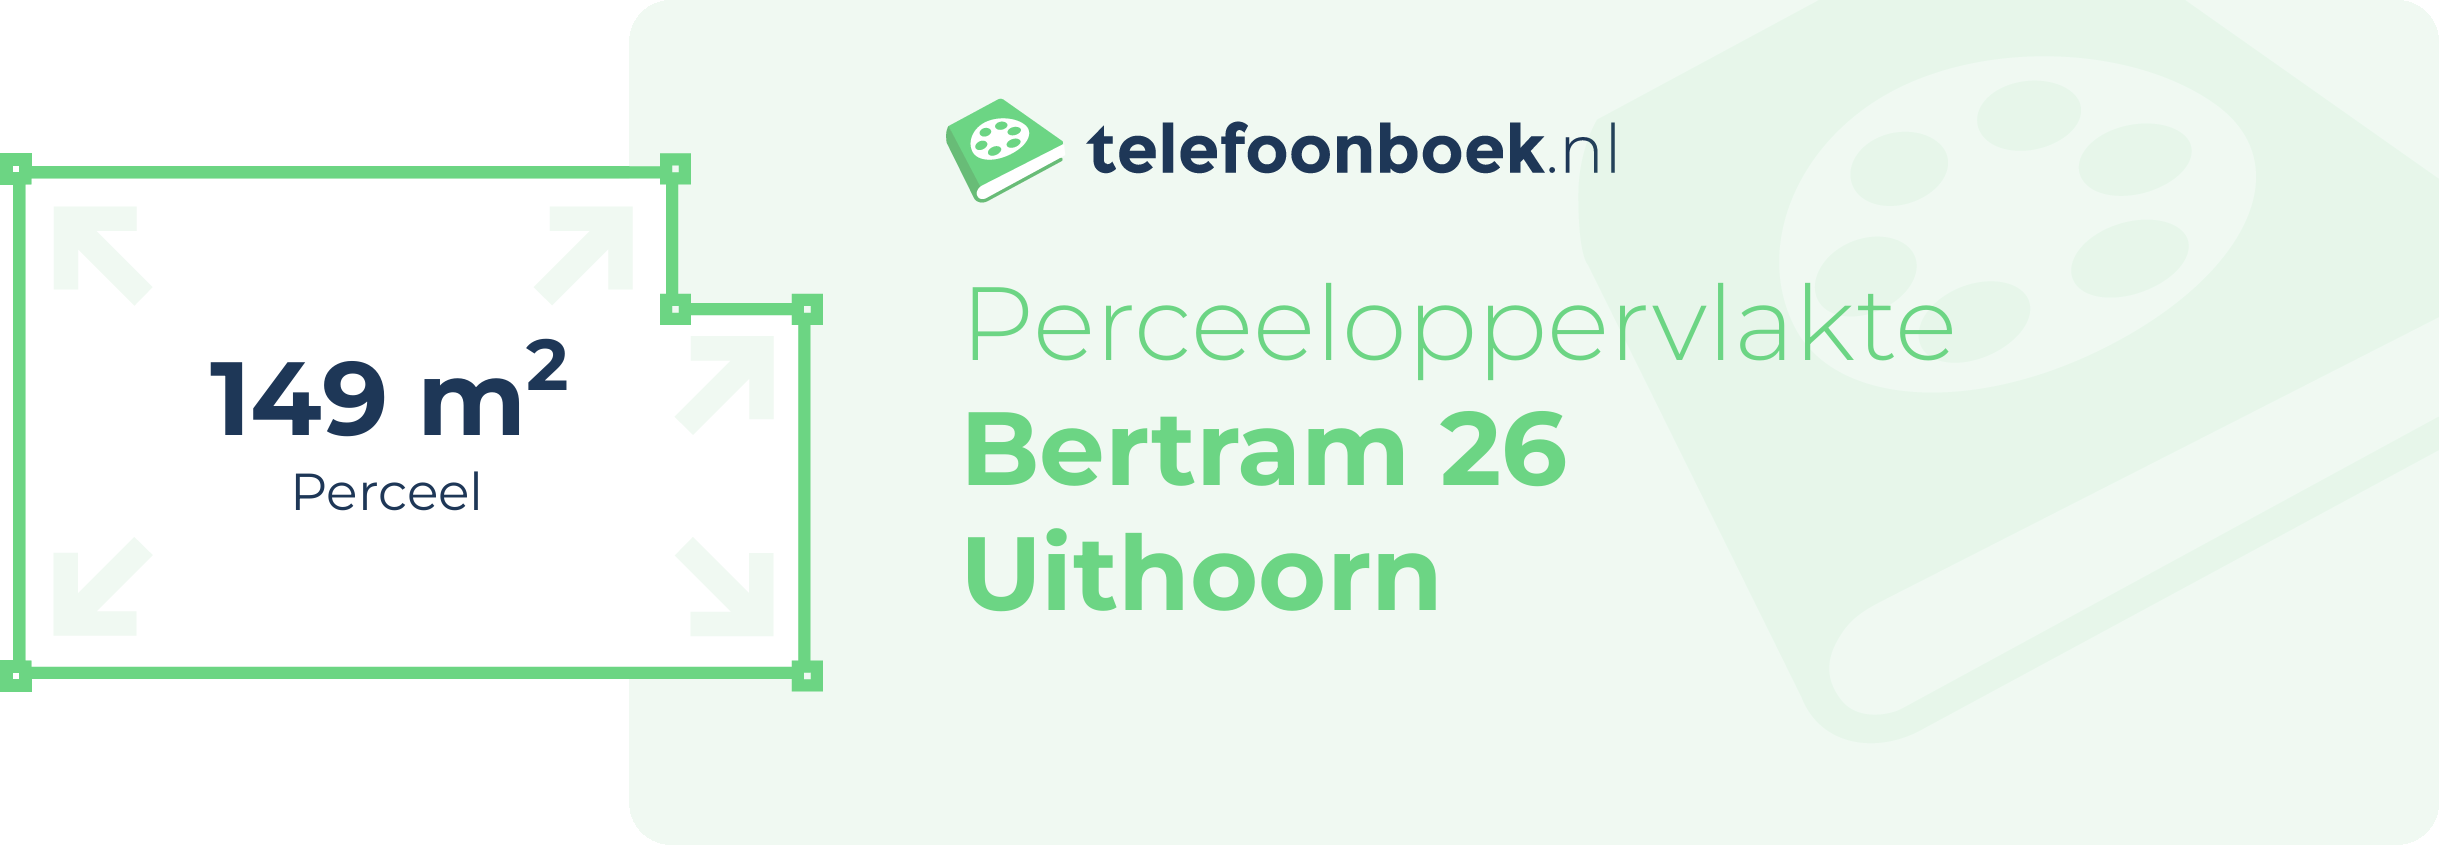 Perceeloppervlakte Bertram 26 Uithoorn